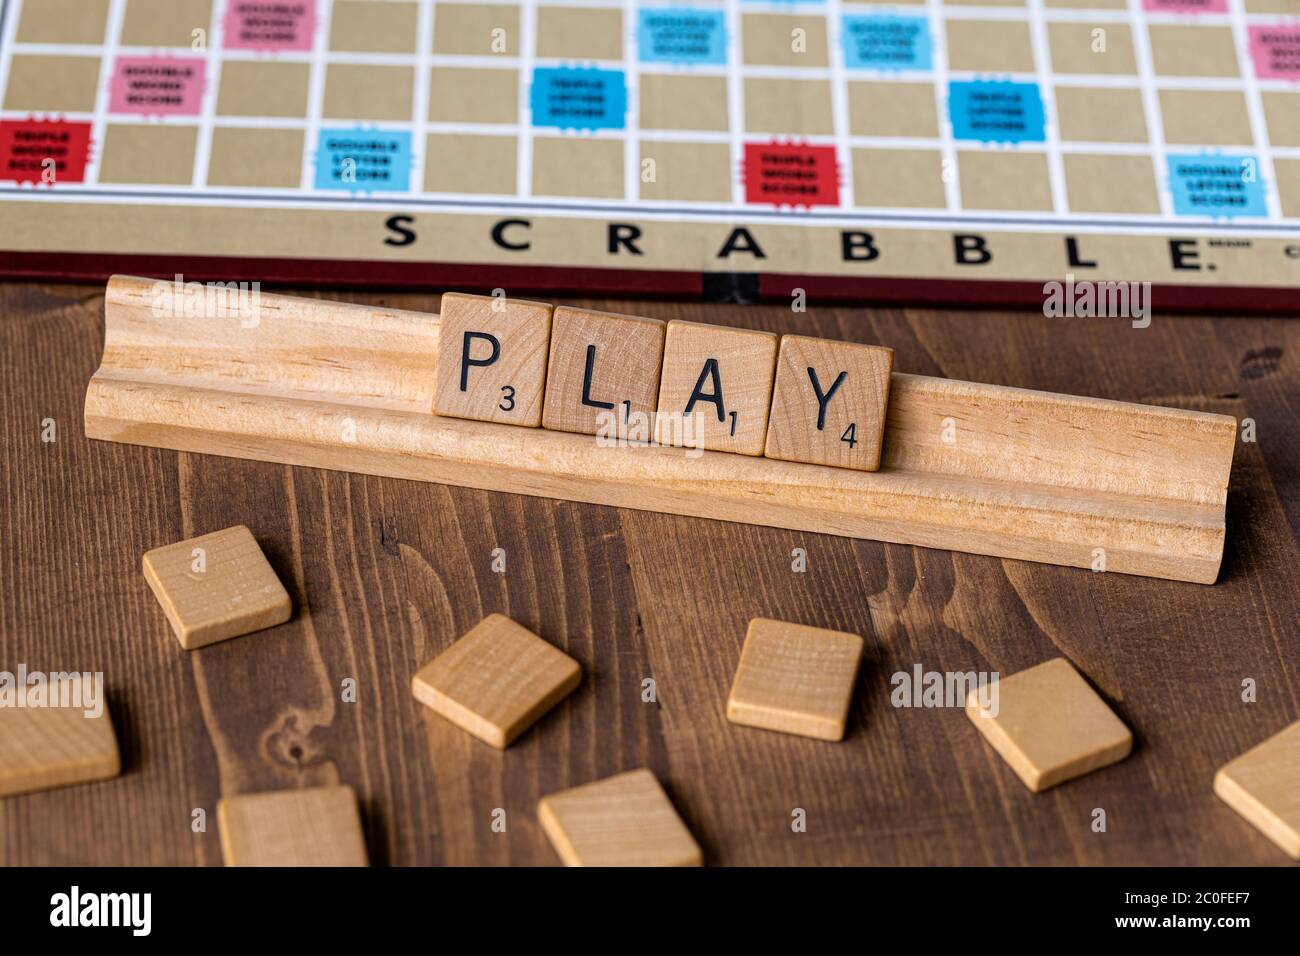 Jeu de société Scrabble avec l'orthographe scrabble en mosaïque 'Play' sur le plateau de table Banque D'Images